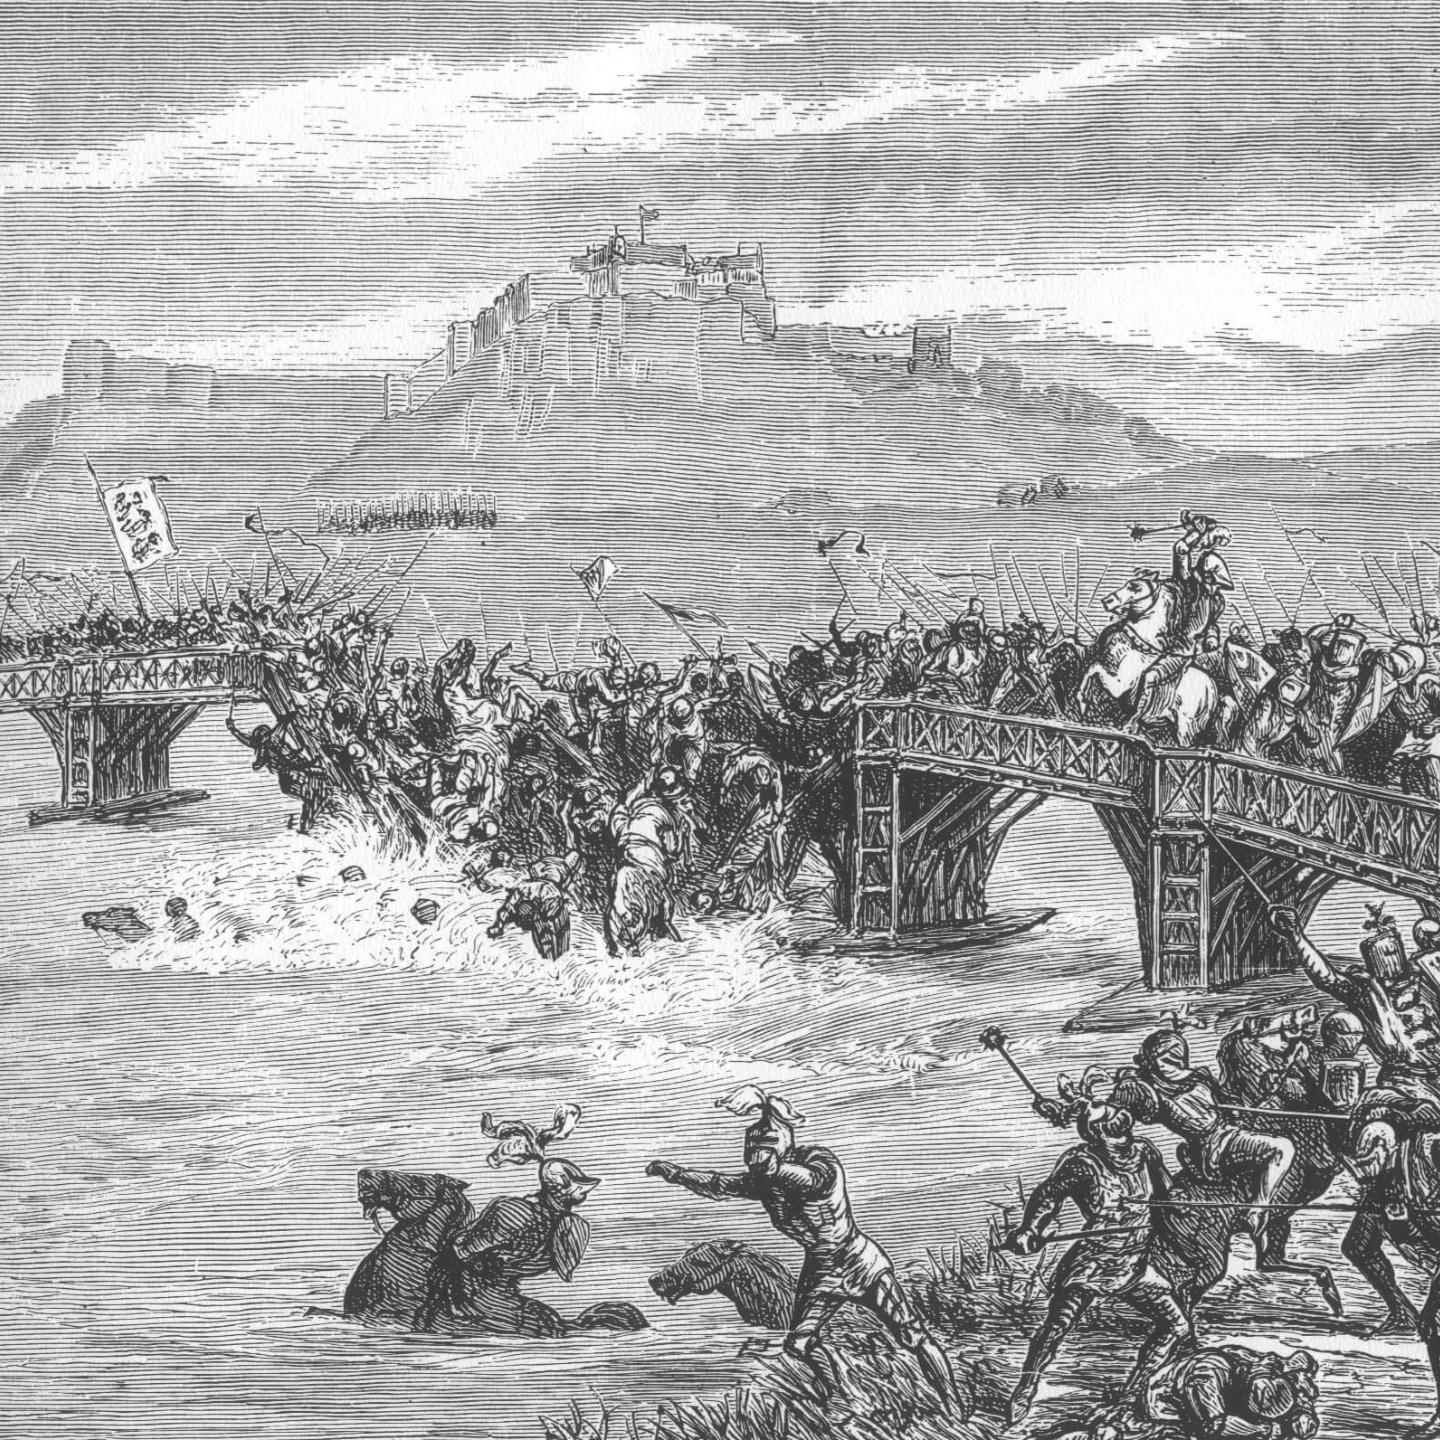 Битва на Стерлингском мосту, рисунок 19-го века.